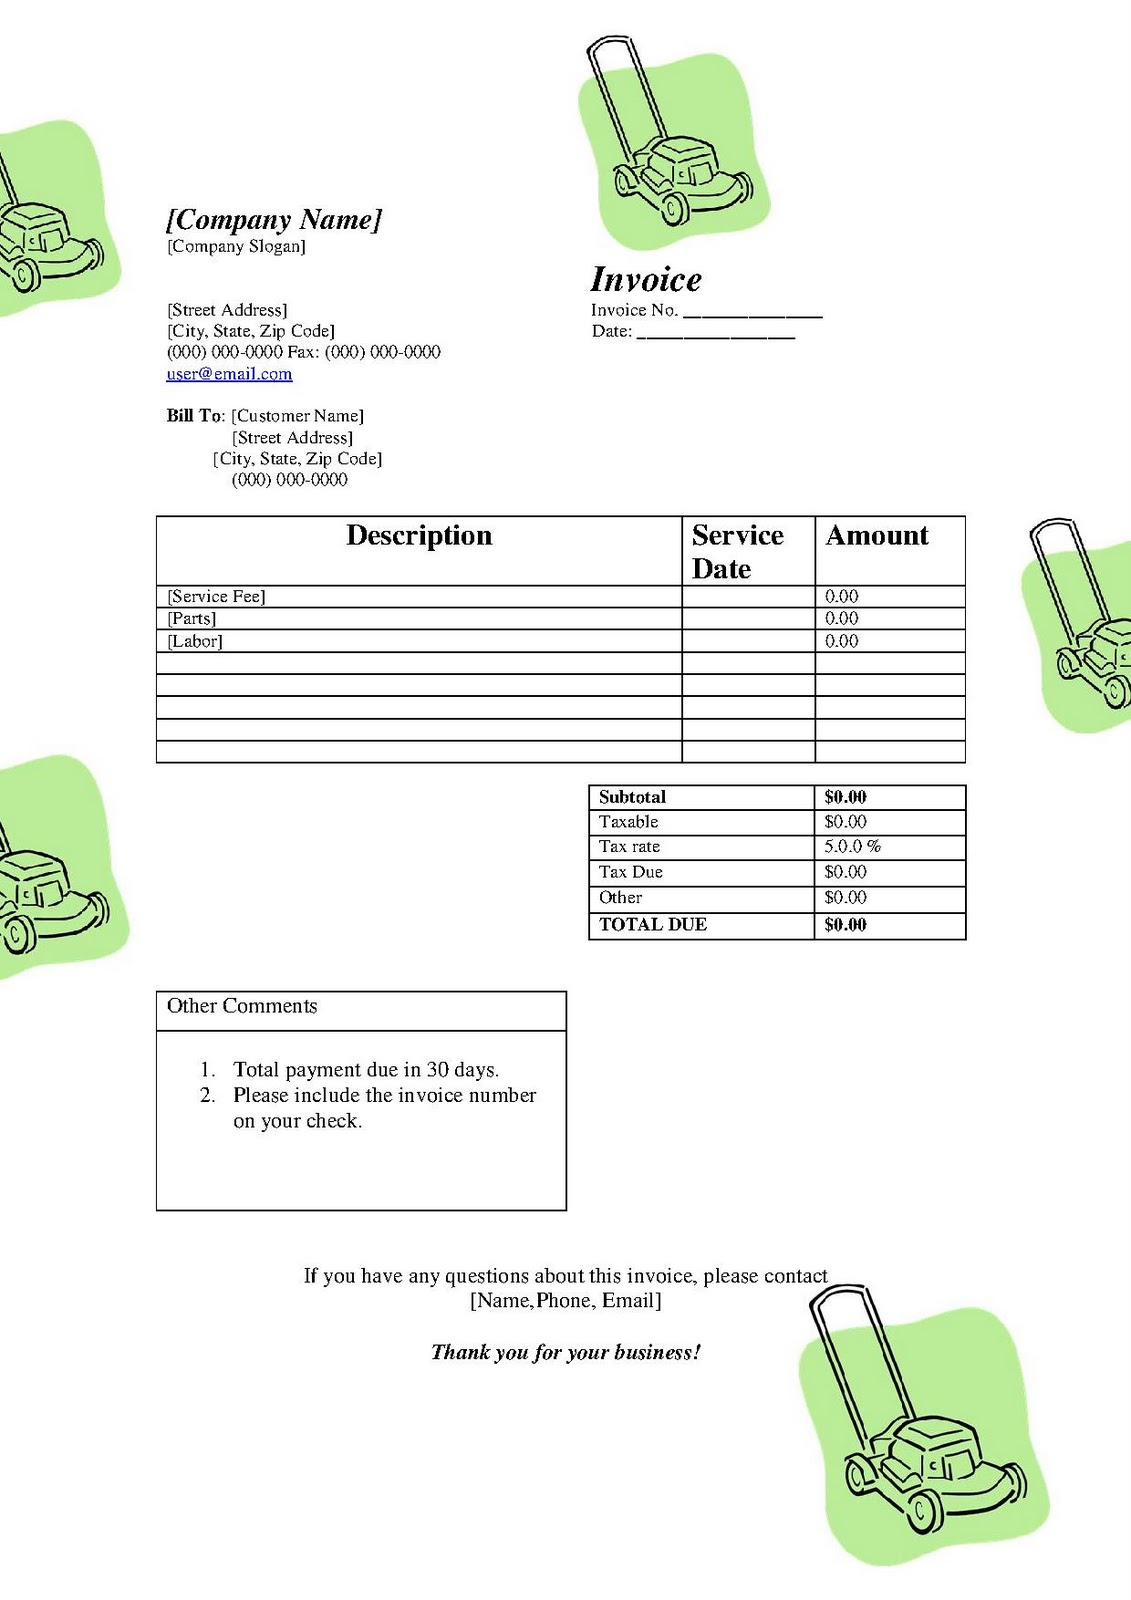 Free Lawn Care Invoice Template ] – Lawn Care Invoice With Lawn Maintenance Invoice Template